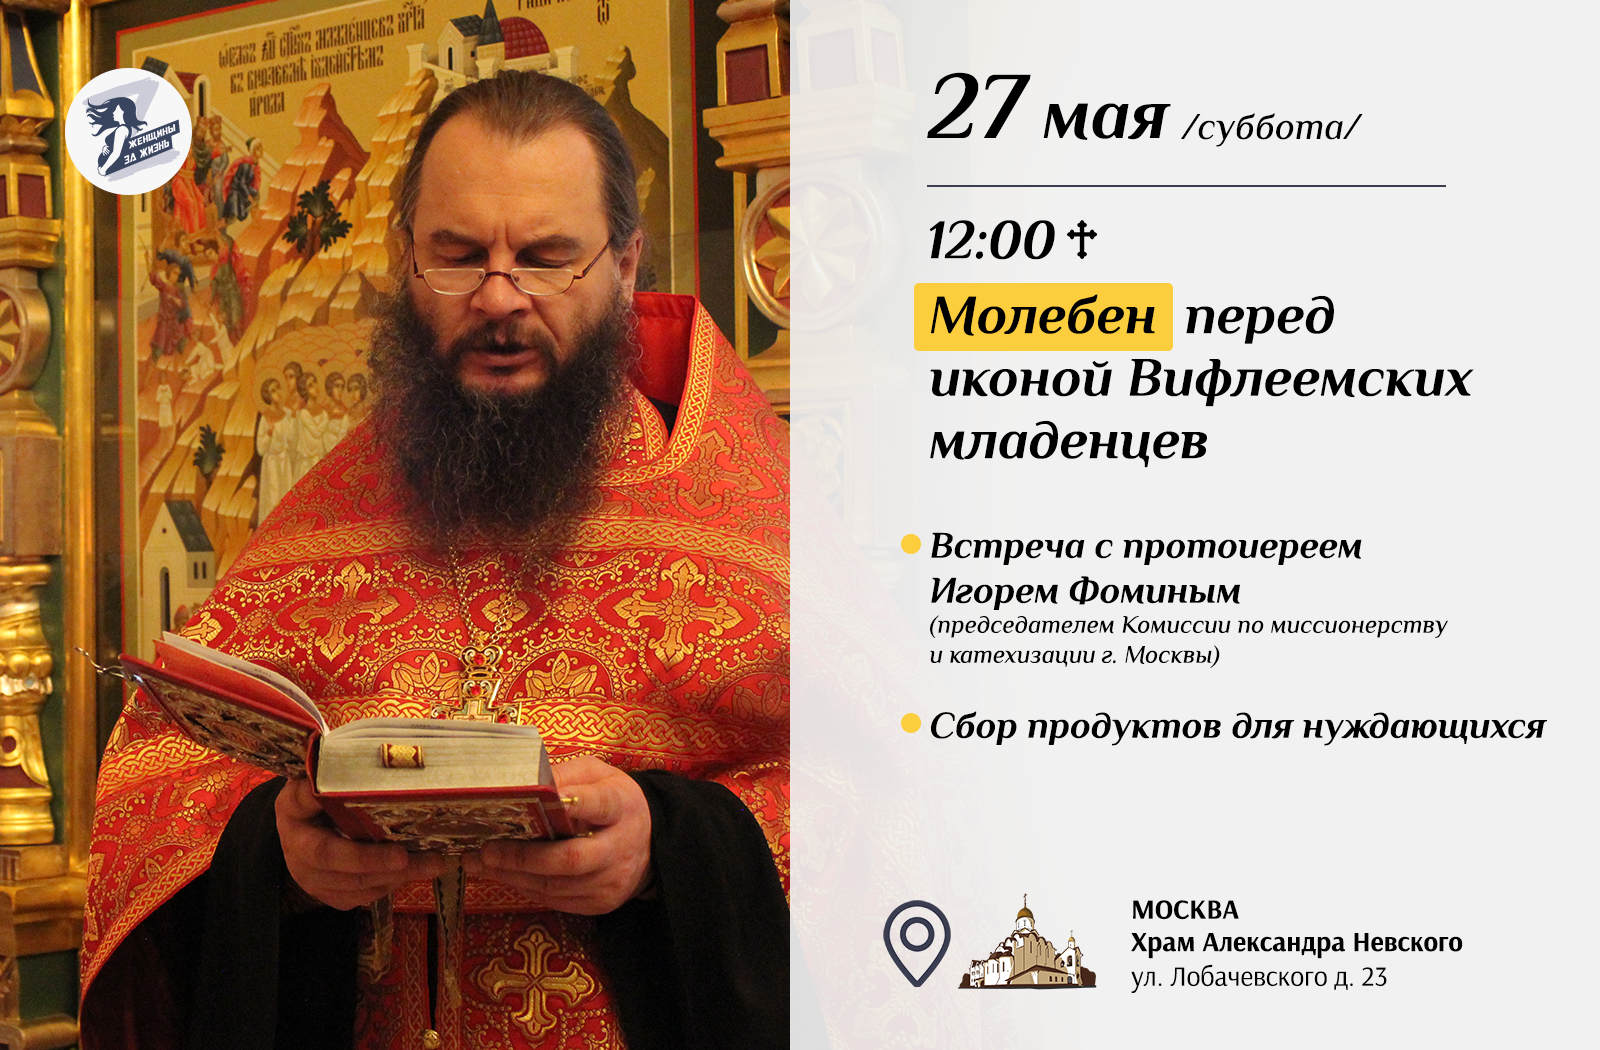 Молебен Вифлеемским младенцам начнется в 12:00 27 мая в Храме Александра Невского.